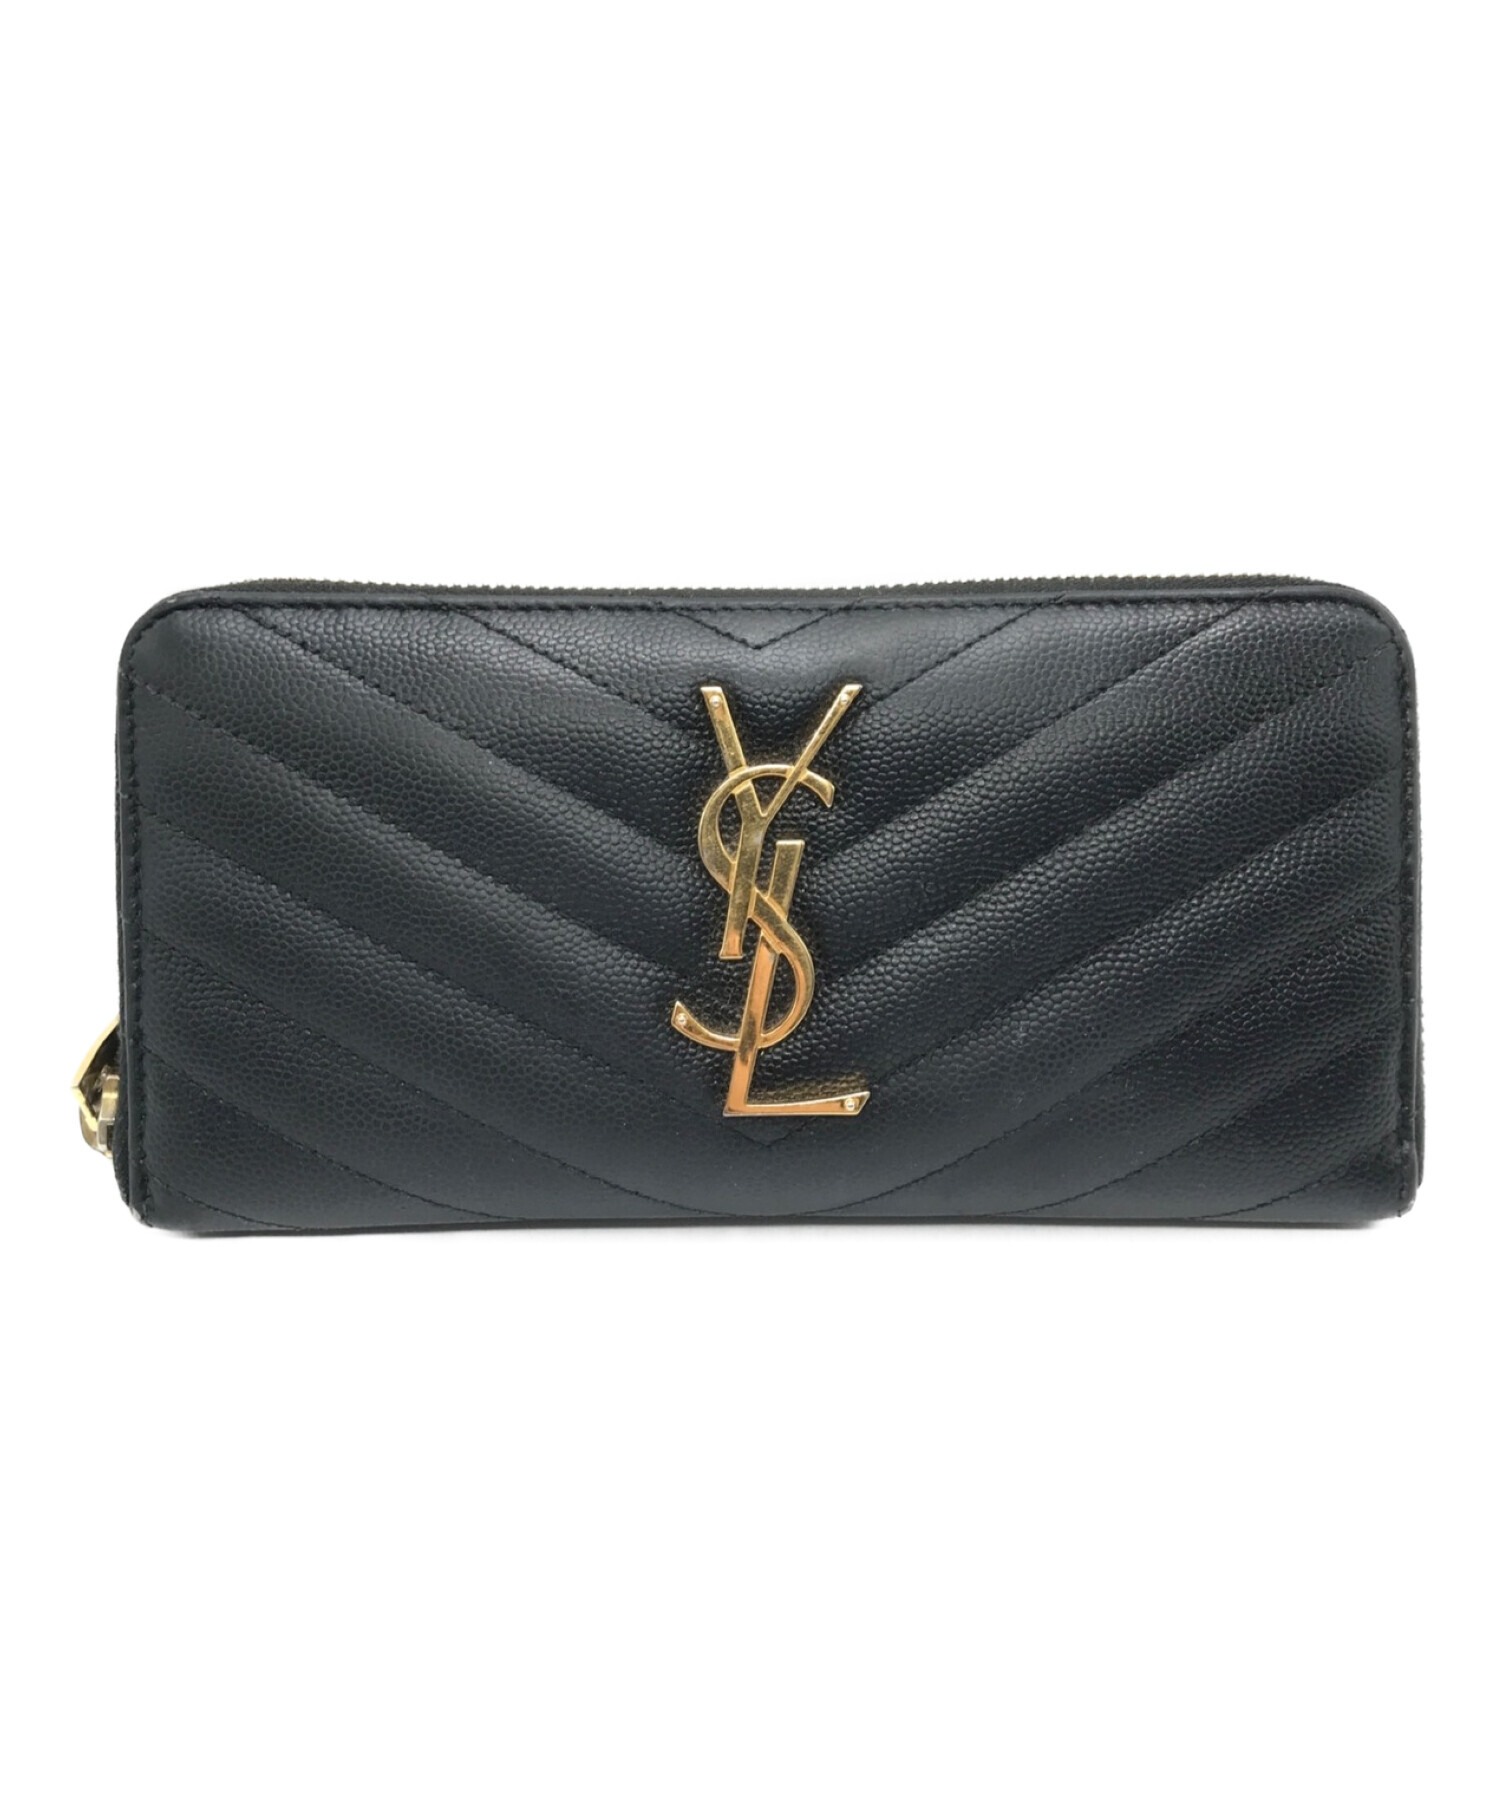 【正規品】Yves Saint Laurent 財布